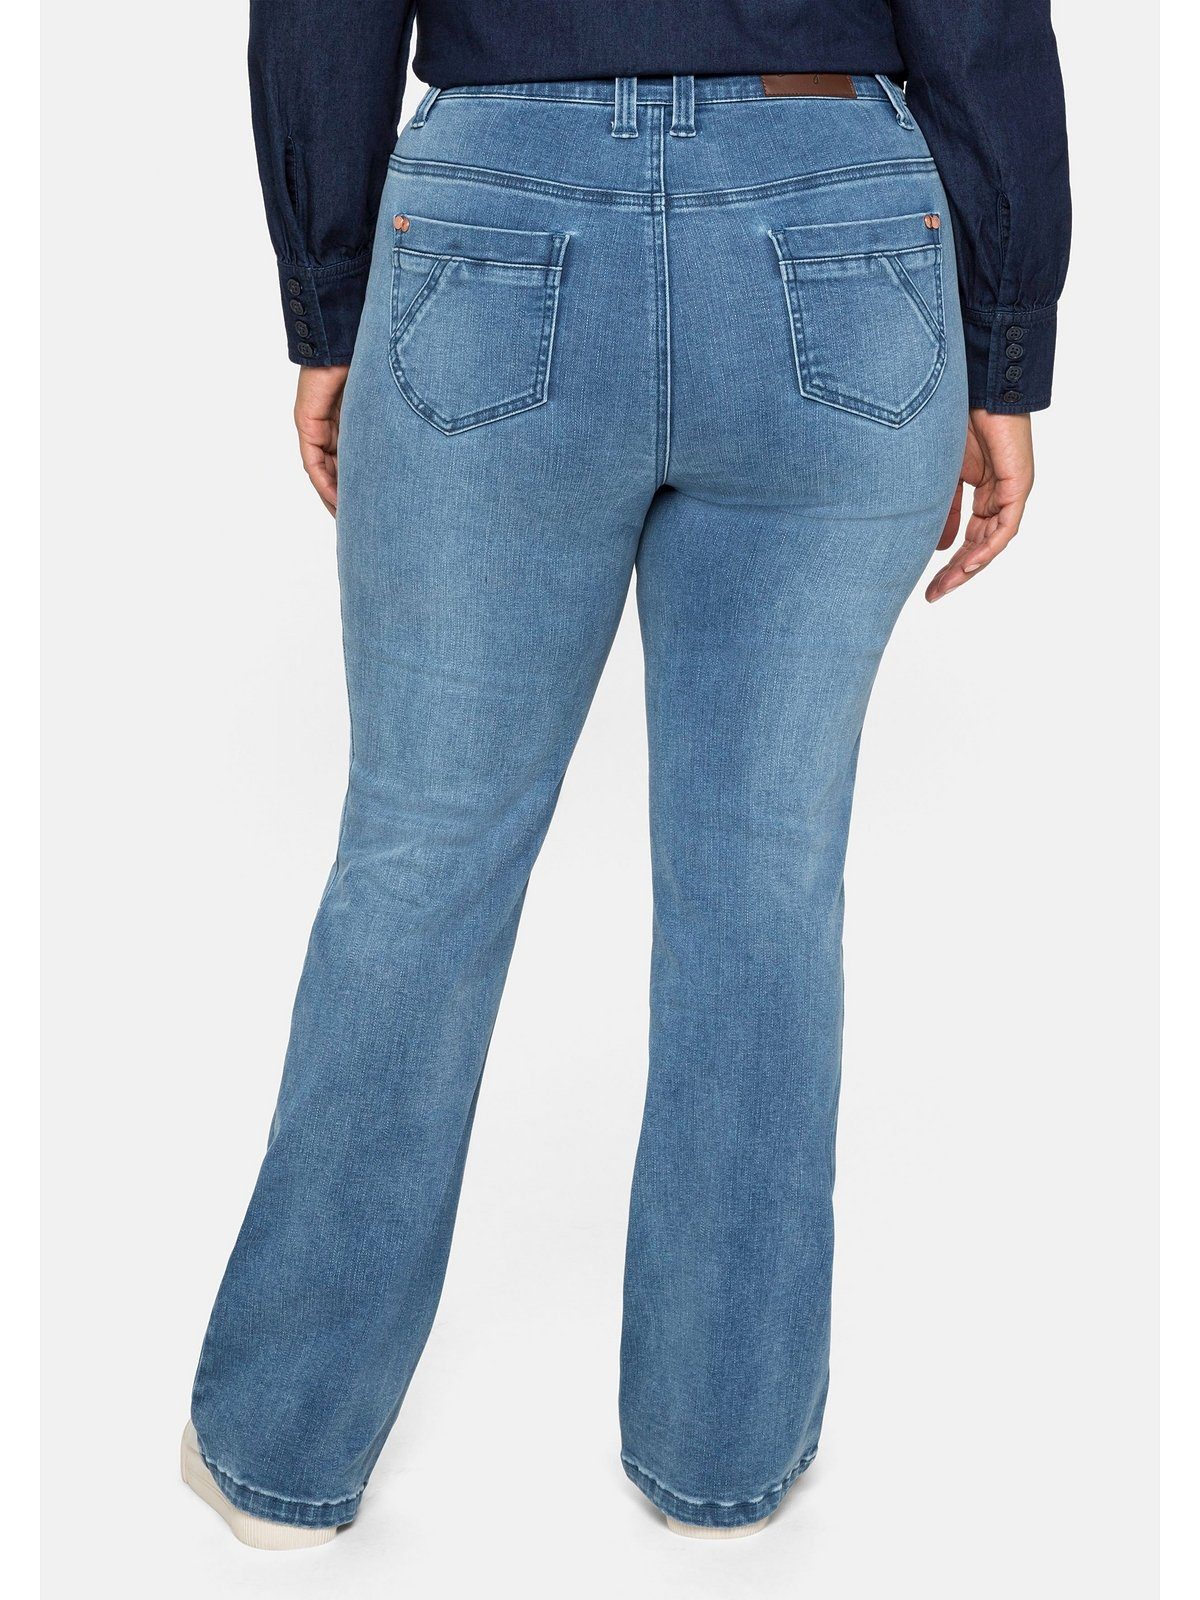 Bootcut-Jeans und Bodyforming-Effekt Große Sheego Größen mit High-Waist-Bund